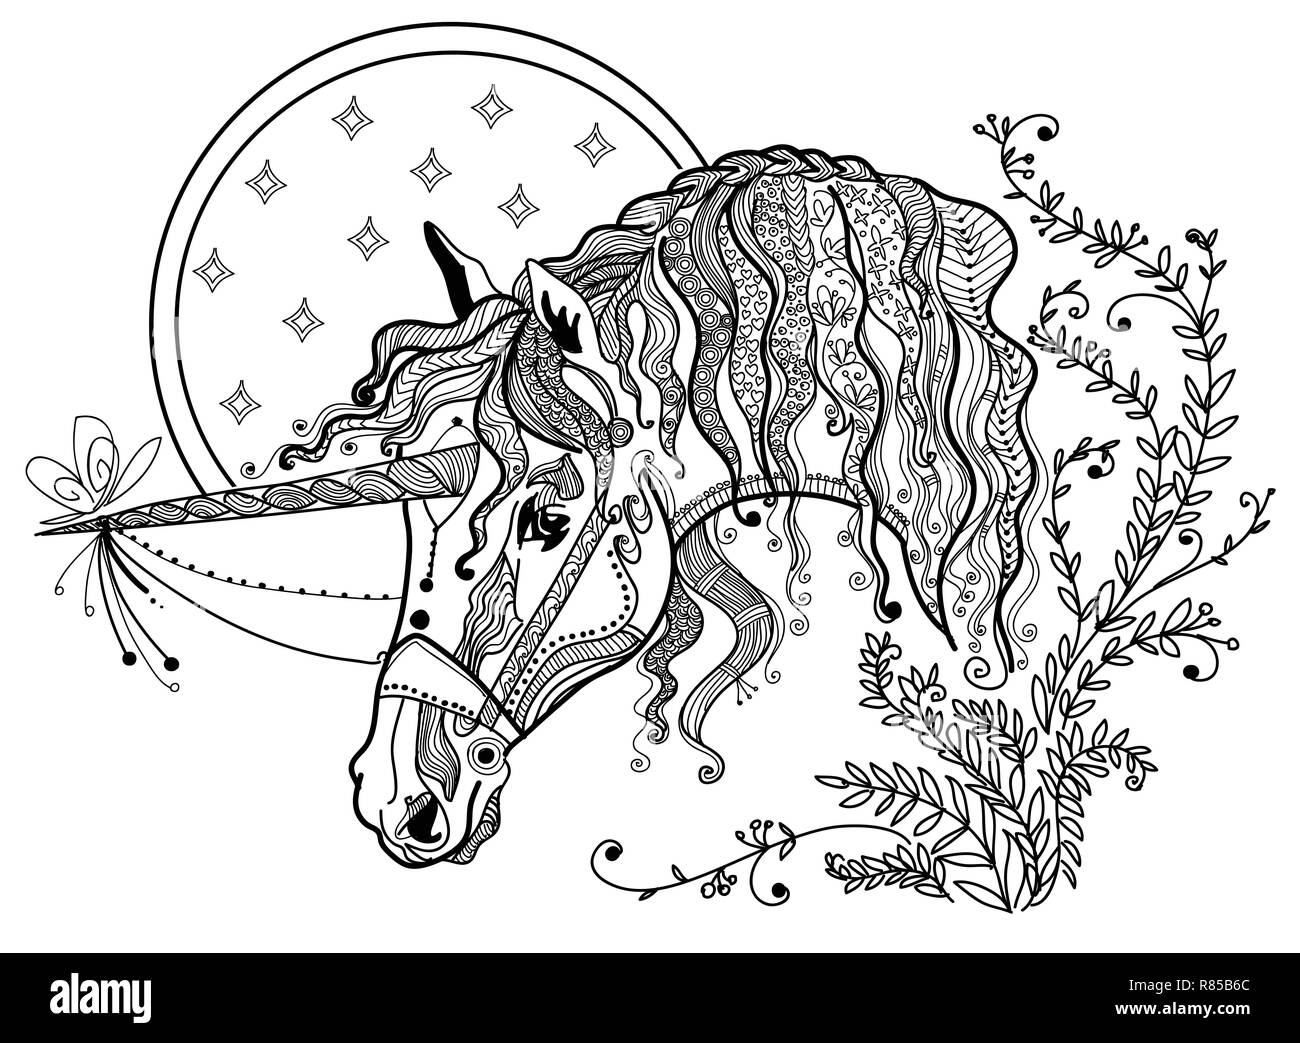 Vektor hand Zeichnung Abbildung zentangle Einhorn in schwarzer Farbe auf weißem Hintergrund. Doodle Einhorn Abbildung. Färbung fantasy Unicorn Stock Vektor